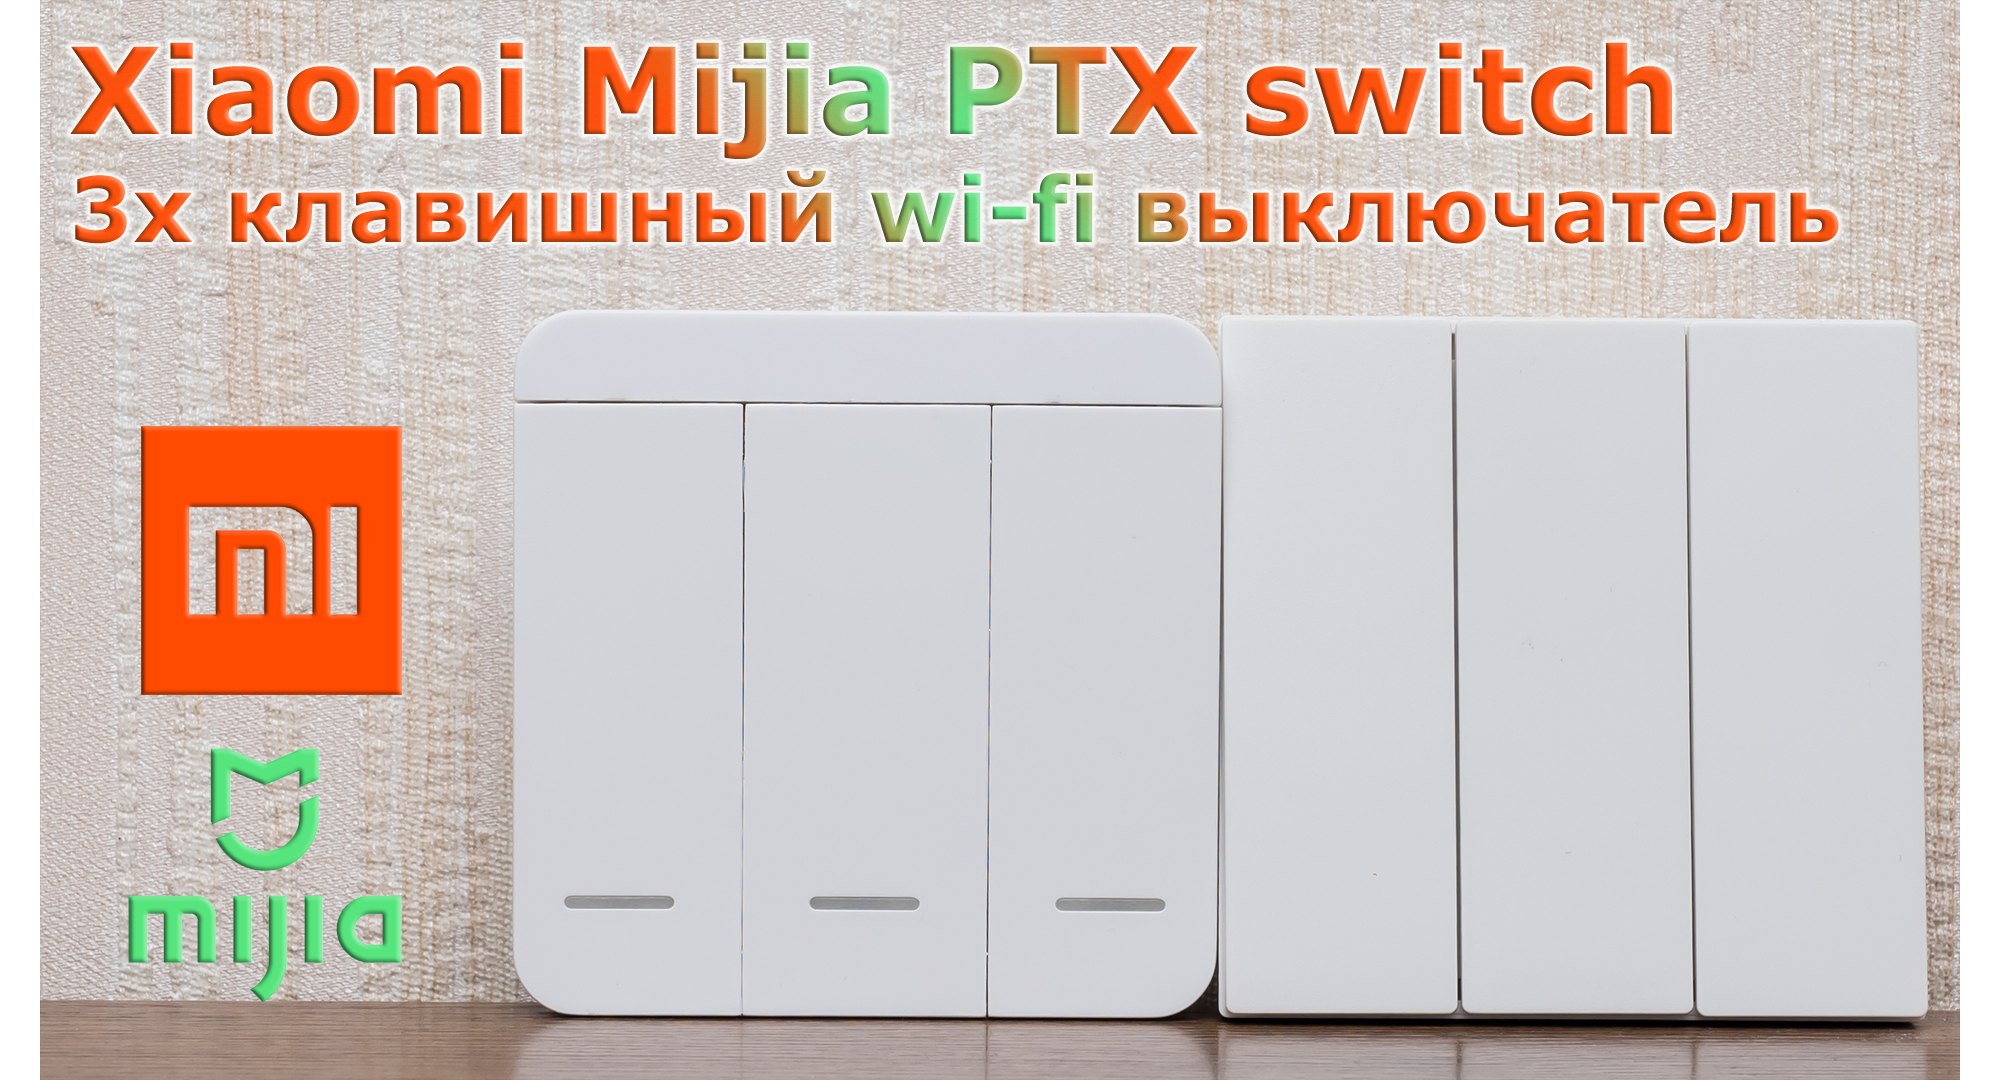 Xiaomi Mijia PTX switch: مفتاح Wi-Fi ذكي مع مكرر 29